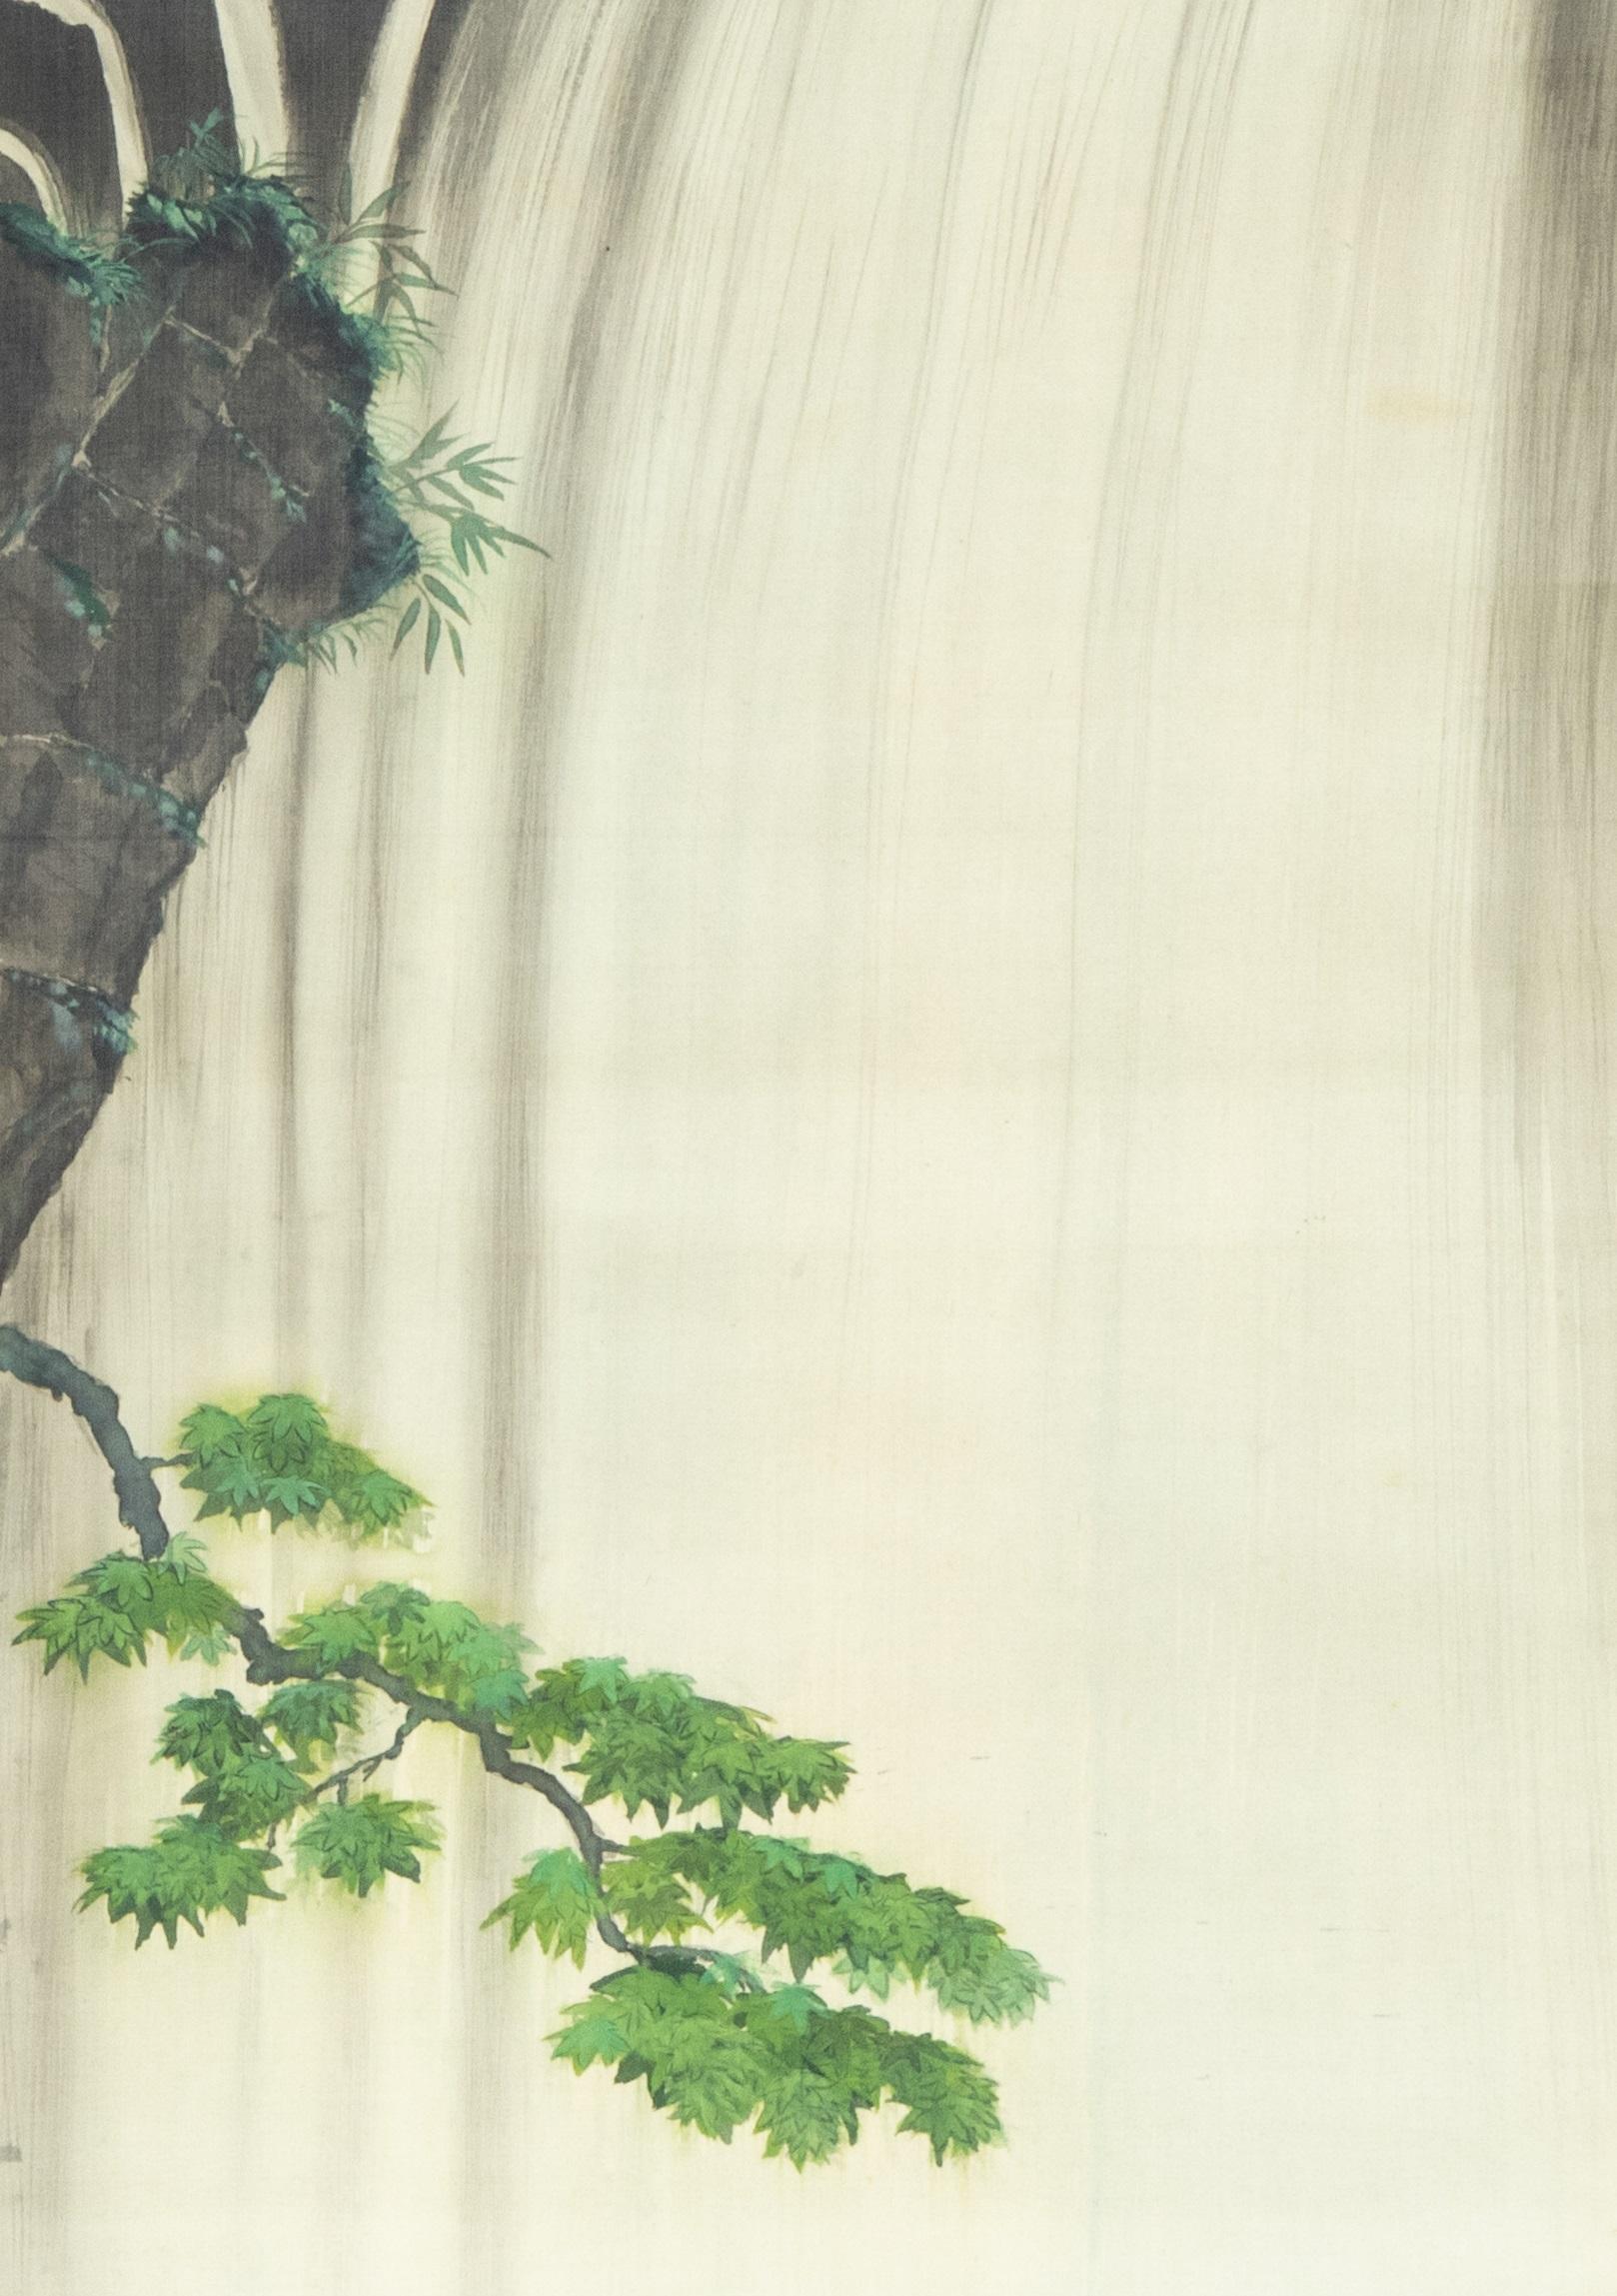 Japanse school Esdoorntak voor waterval
Rolschildering / scroll op zijde, benen rollers. B 106 x 42.8 / 167 x 56.1 cm
106 x 42.8 / 167 x 56.1 cm